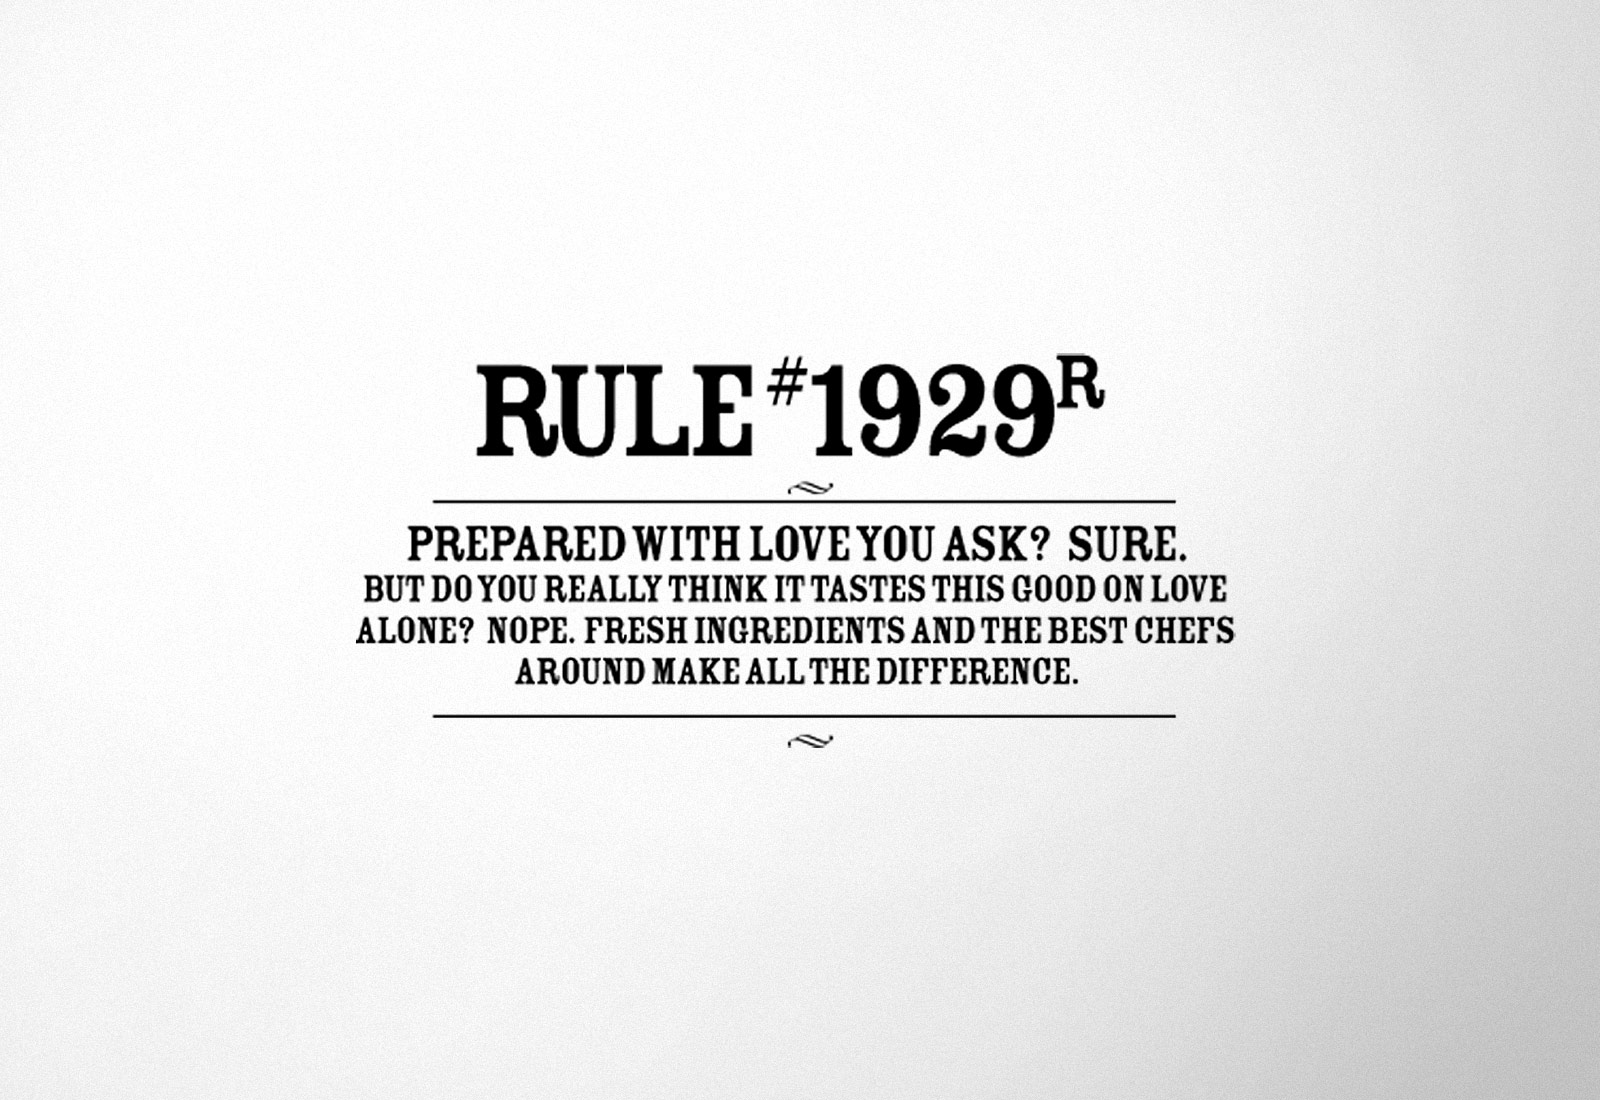 Rule 1929R